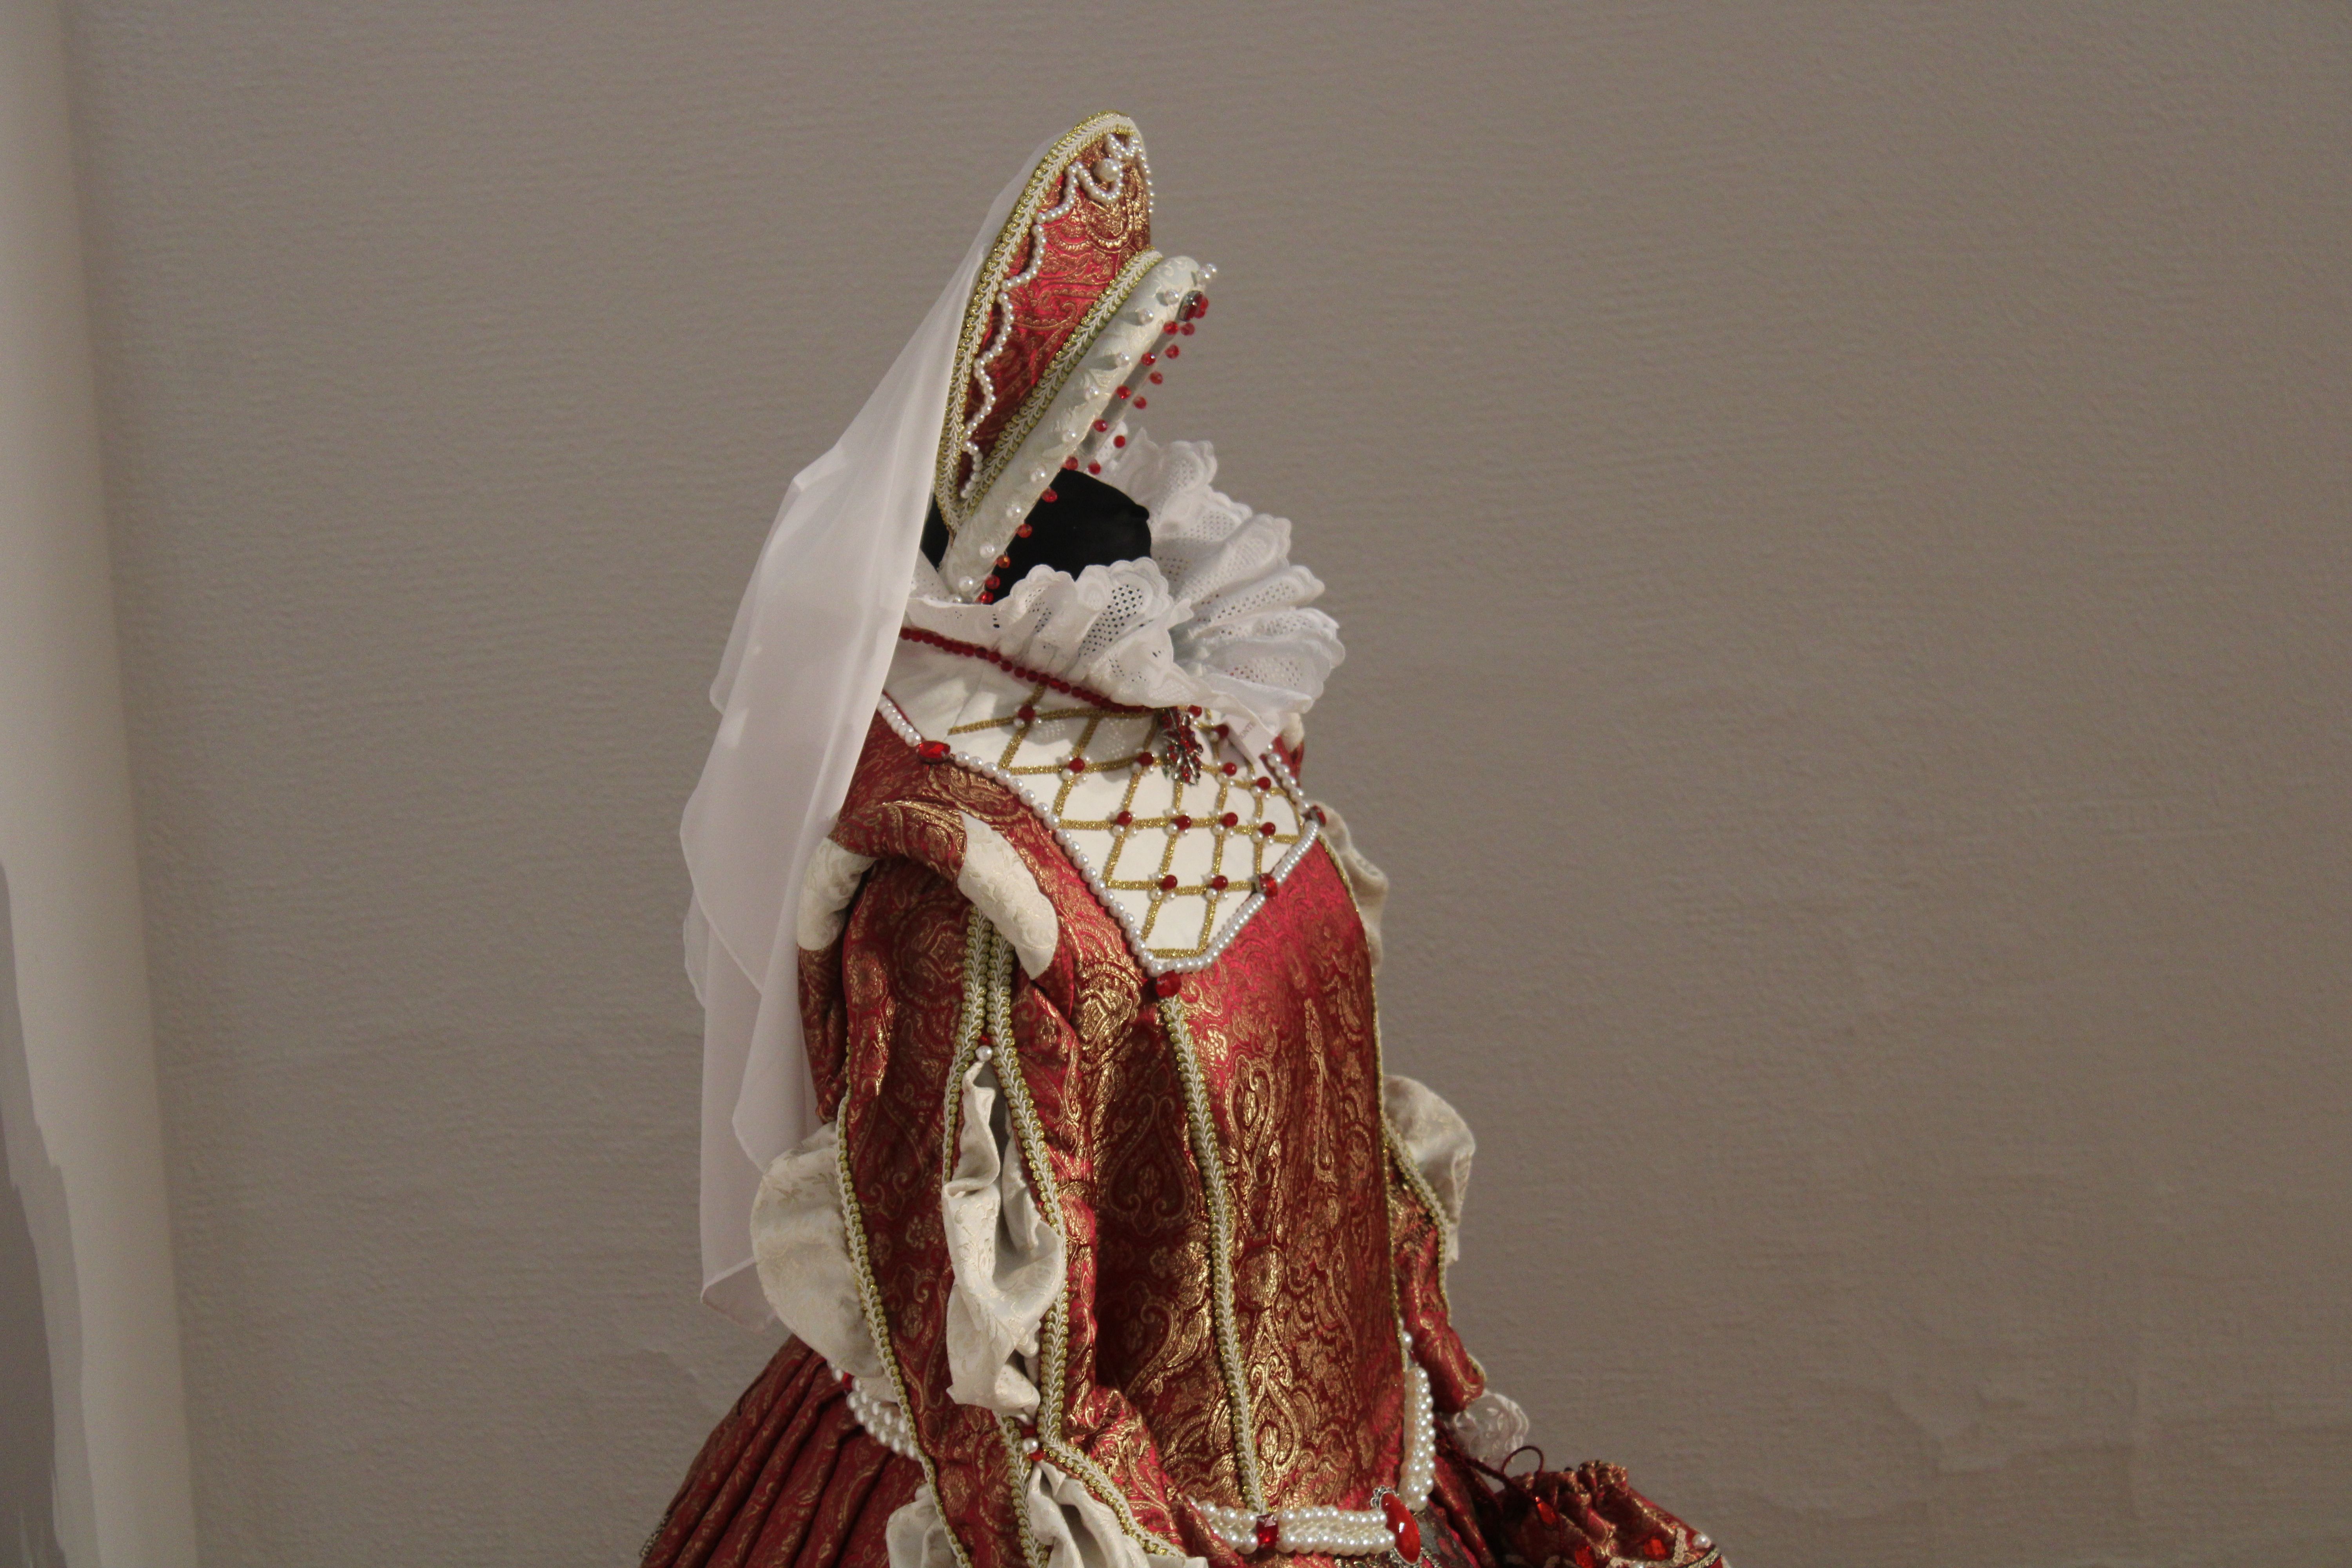 Exposición de los trajes del Siglo de Oro en el Palacio de Garcigrande 